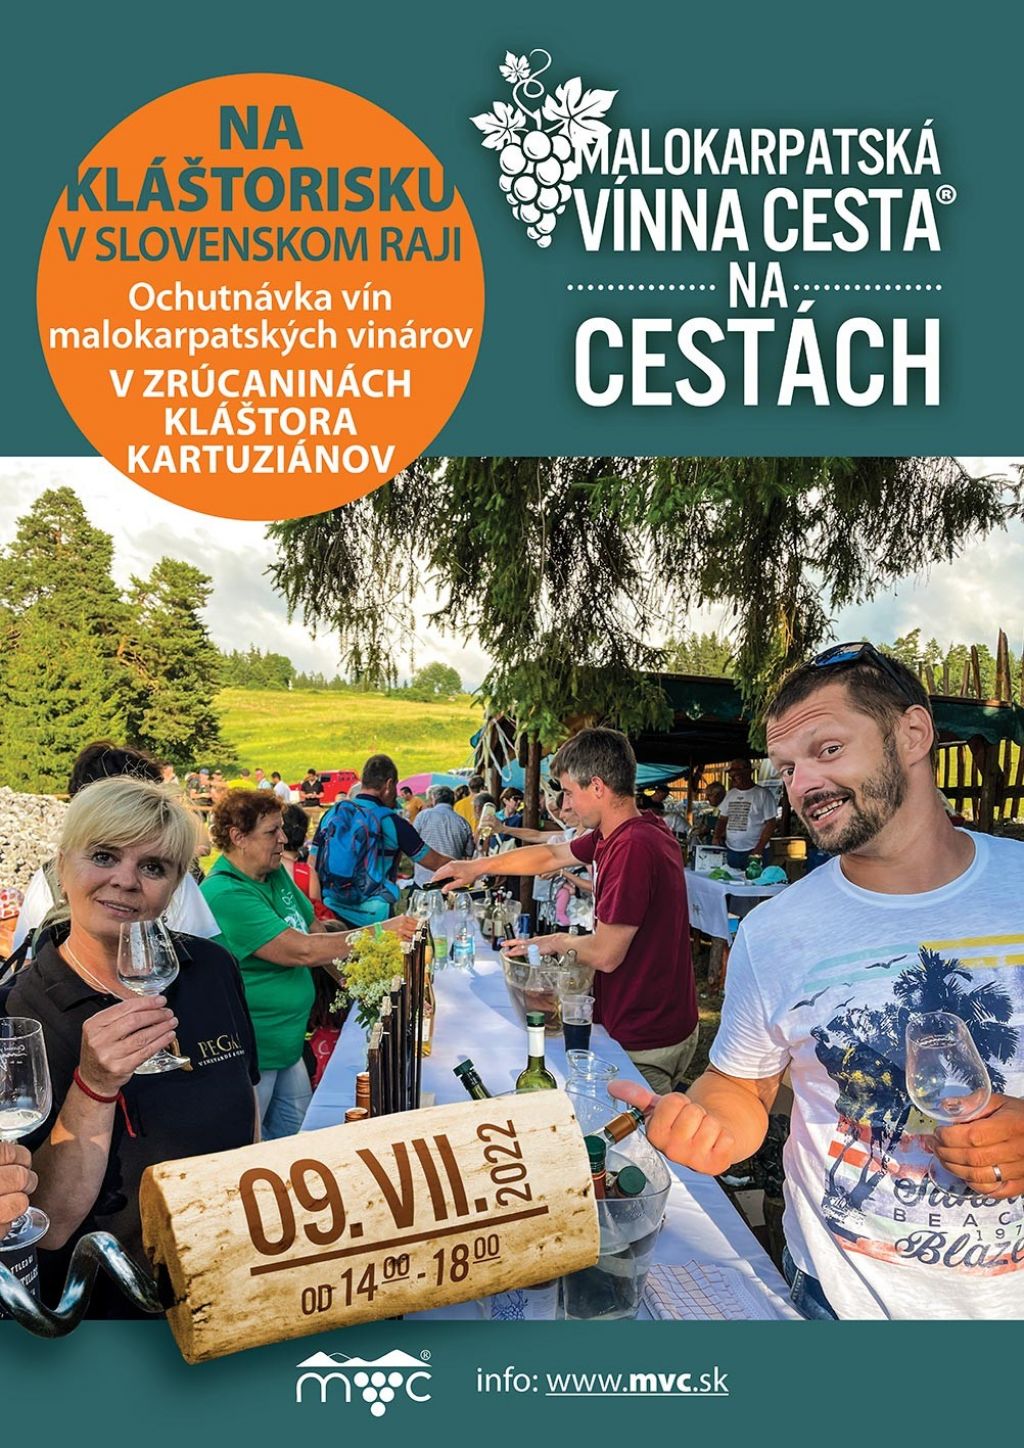 Malokarpatská vínna cesta v Slovenskom raji | spisskanovaves.eu